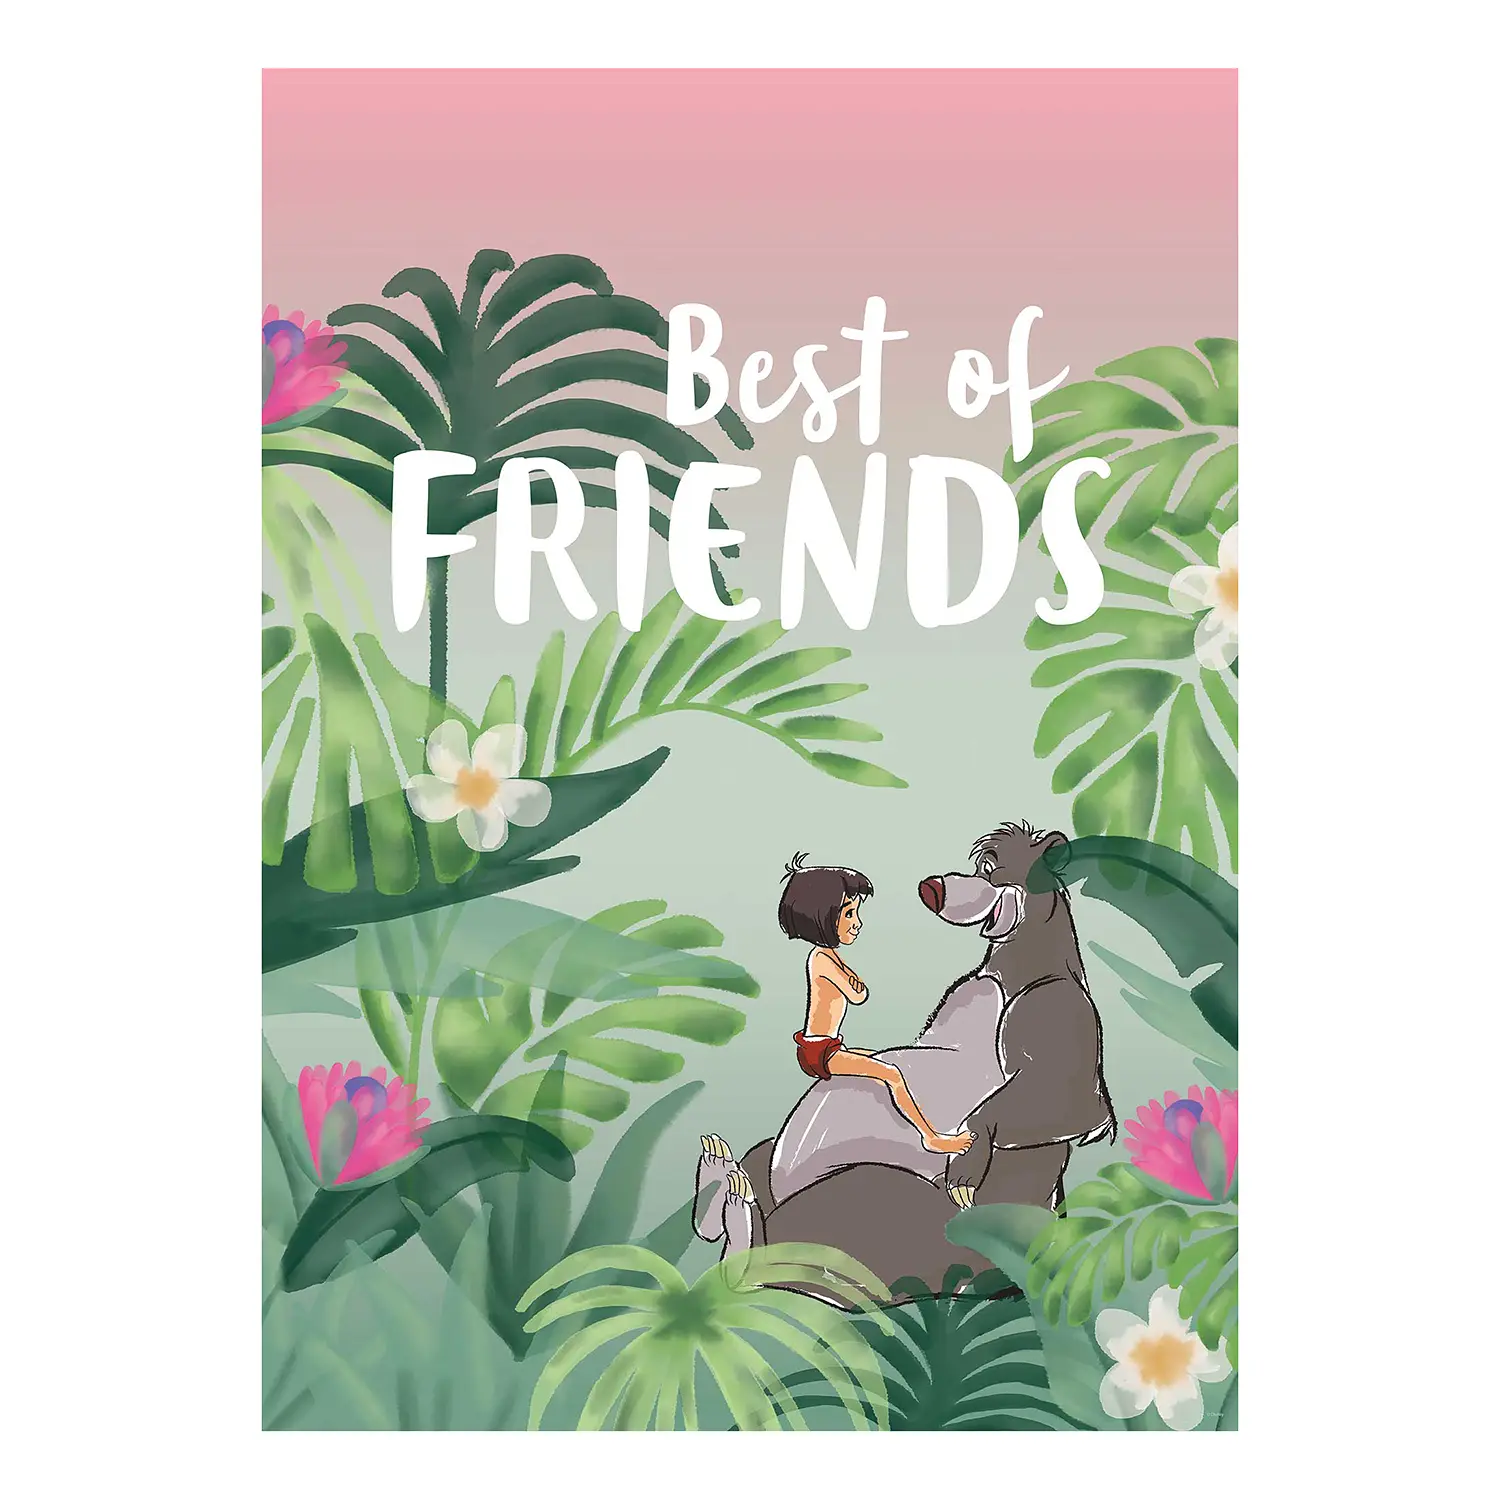 Wandbild Jungle Book Friends of Best